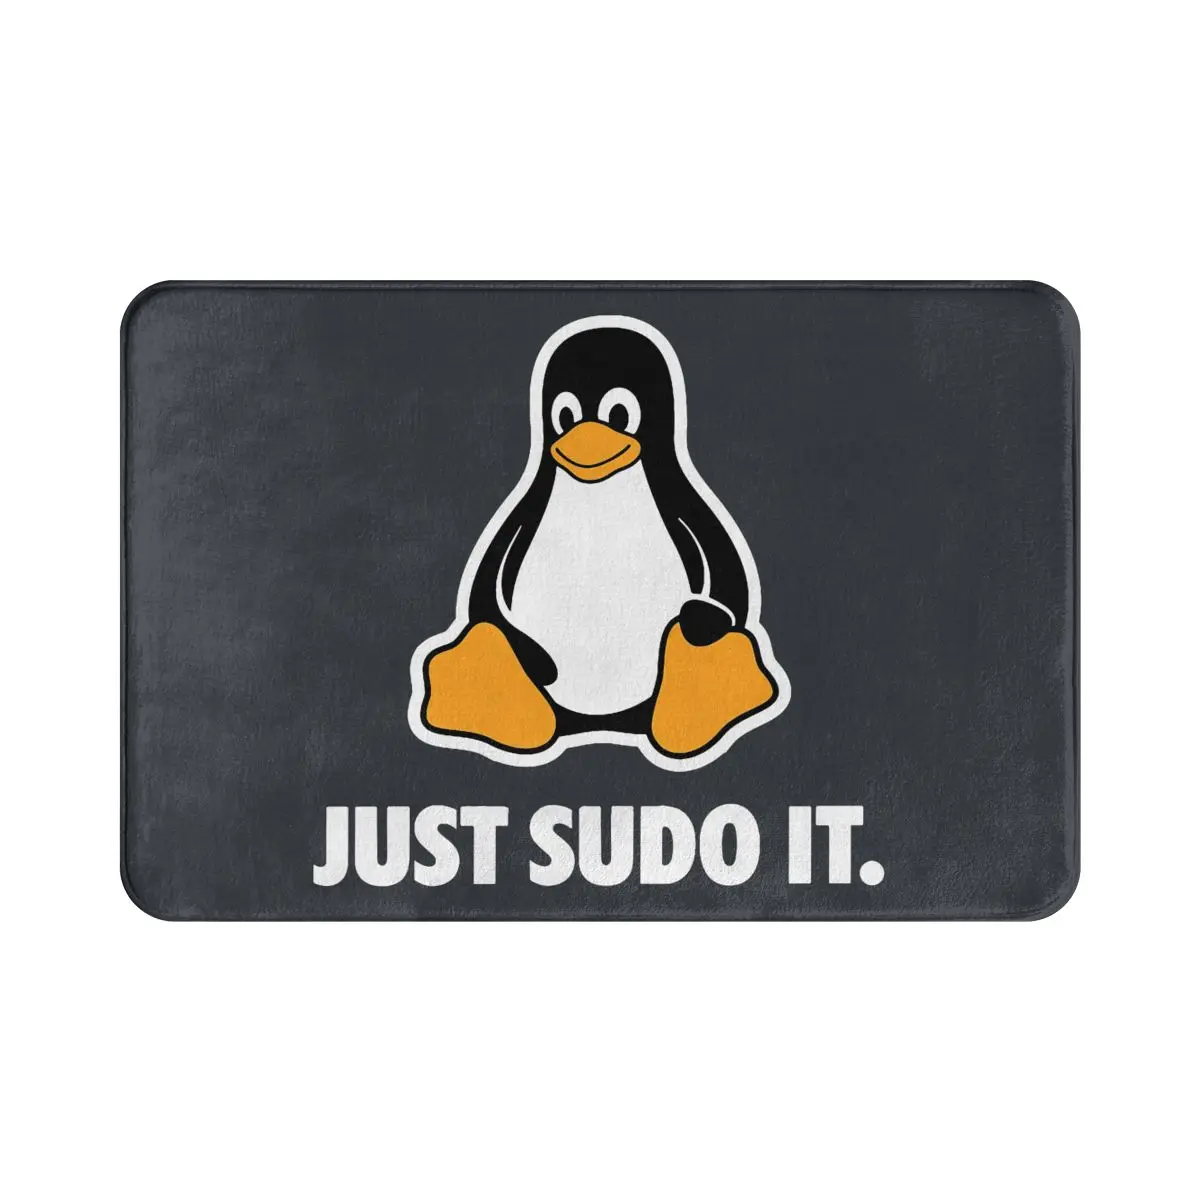 Операционная система Linux Tux Пингвин, нескользящий Придверный коврик, просто Sudo It, коврик для гостиной, спальни, молитвенный Настенный декор